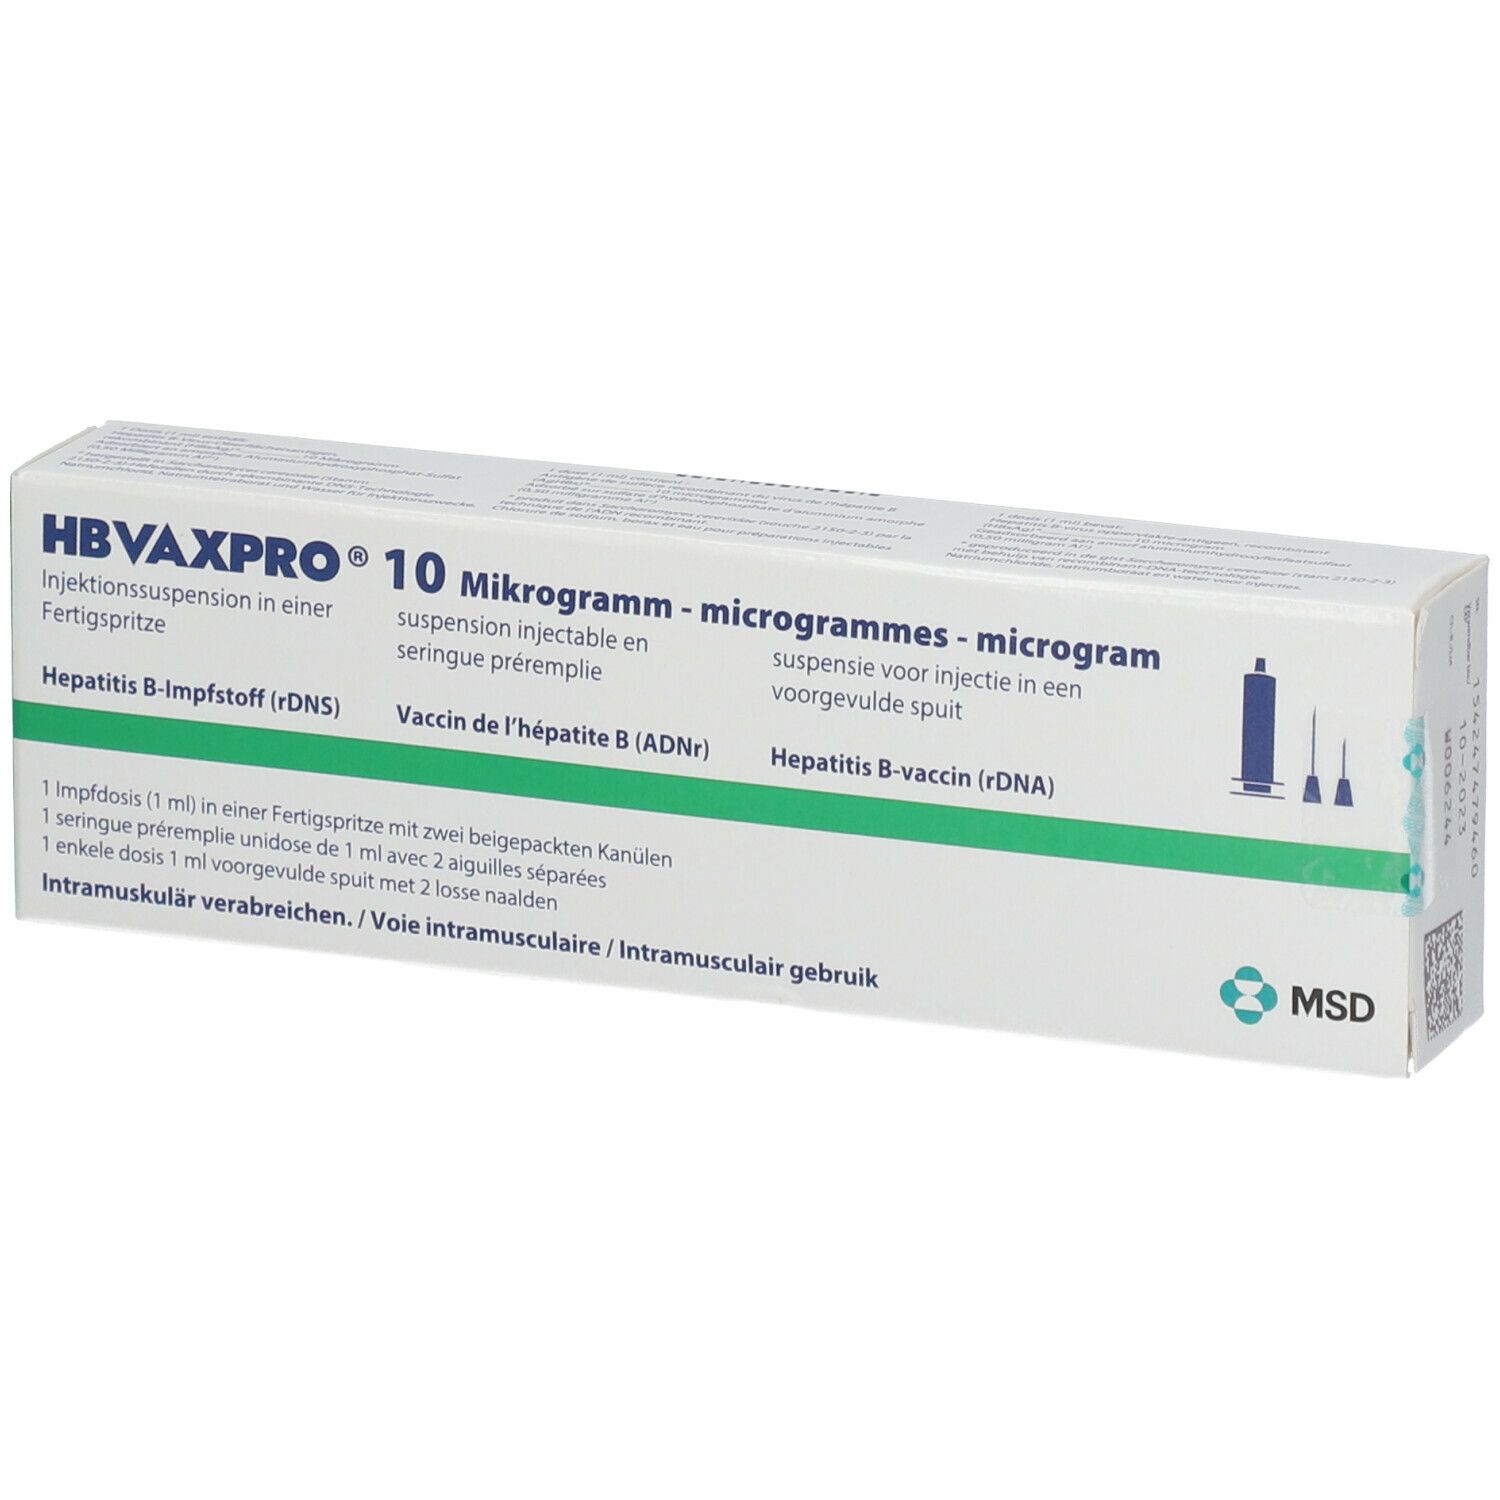 HBVAXPRO® 10 Mikrogramm